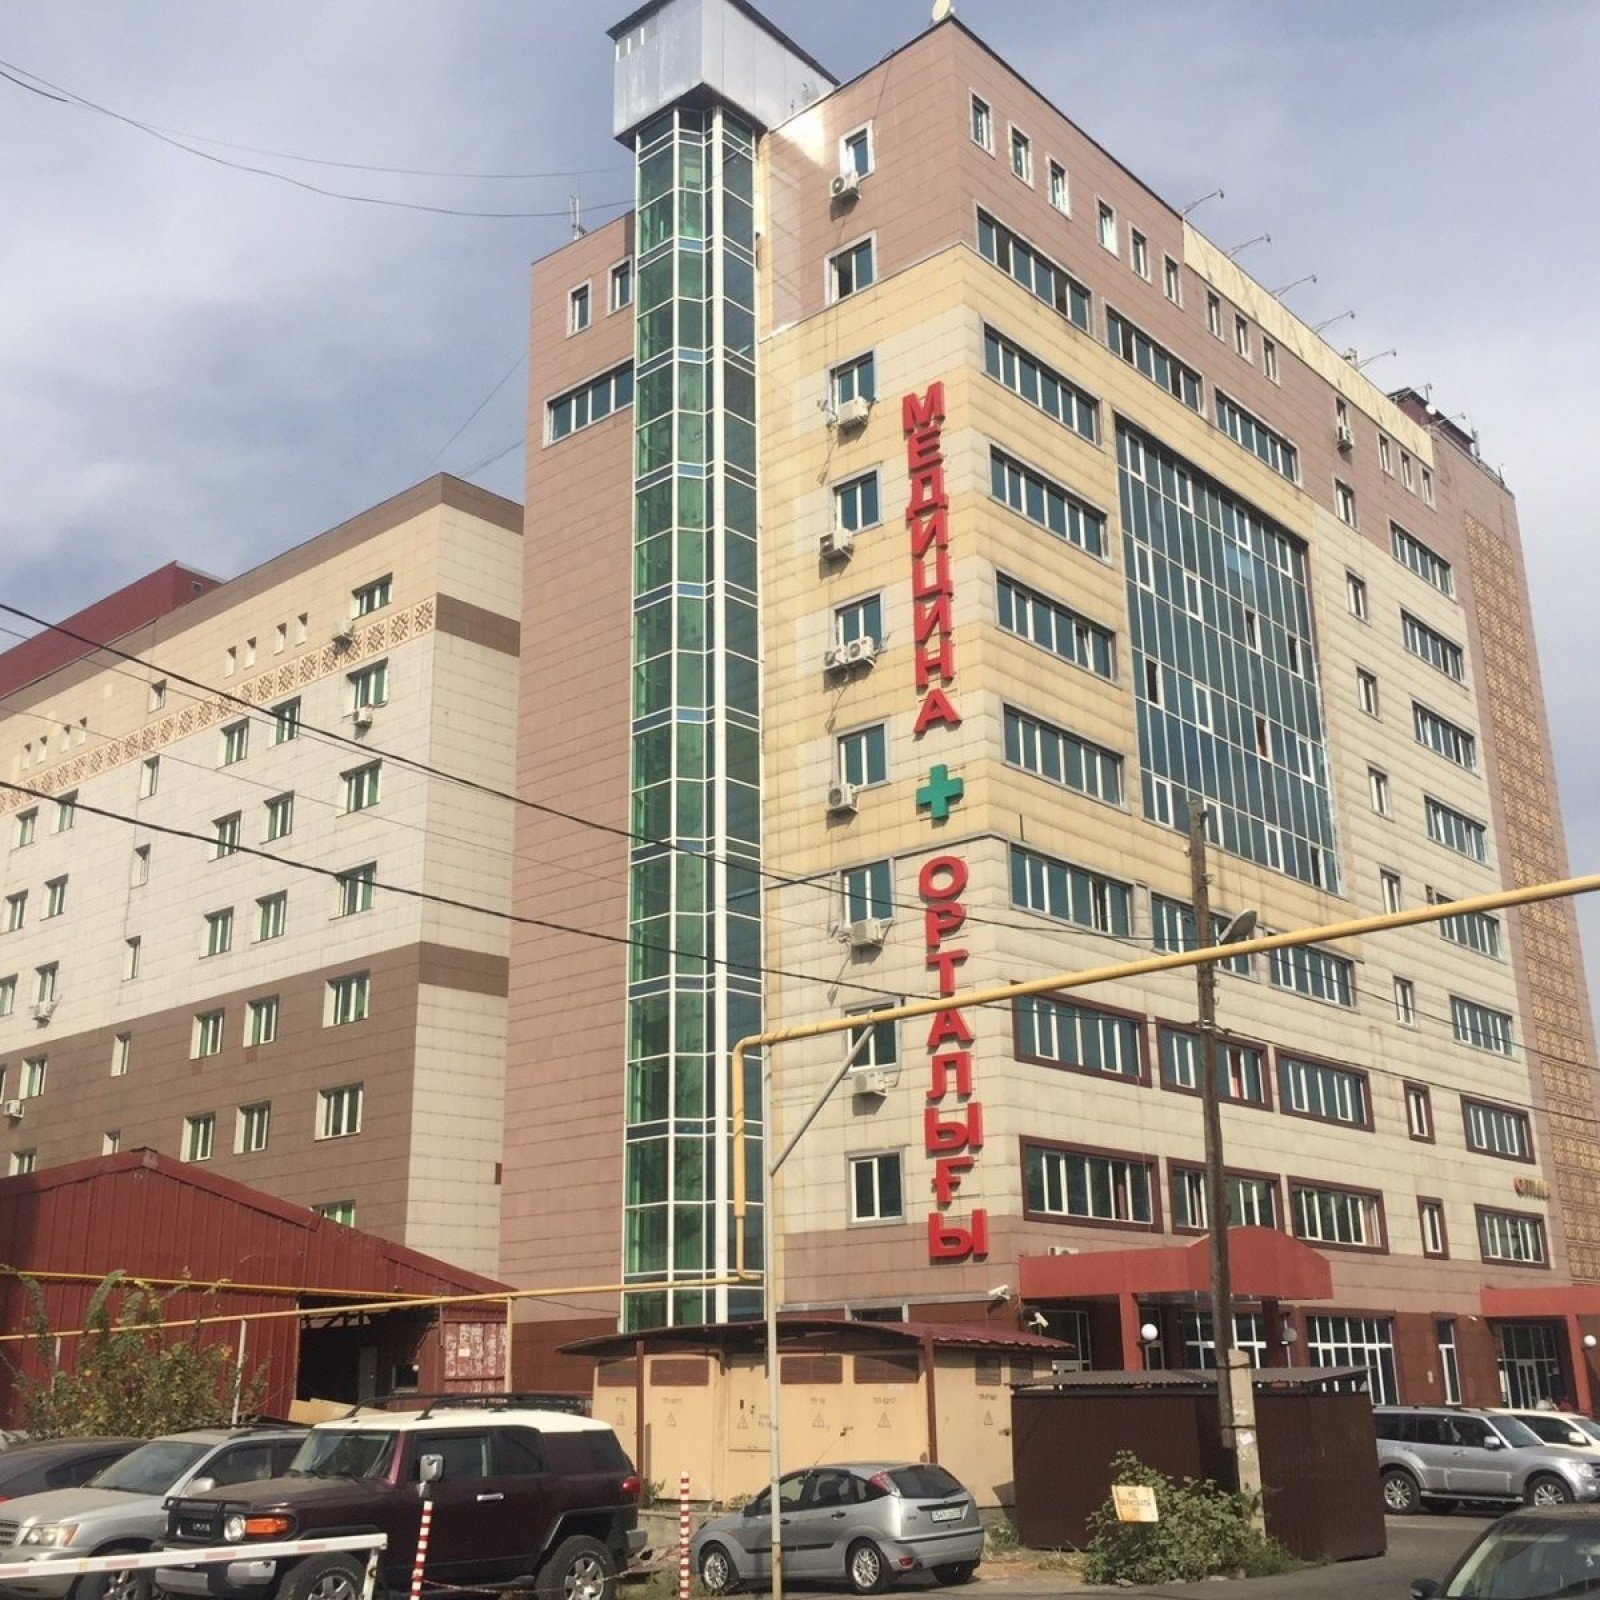 В Алматы хирурга взяли под стражу через два года после смертельной липосакции